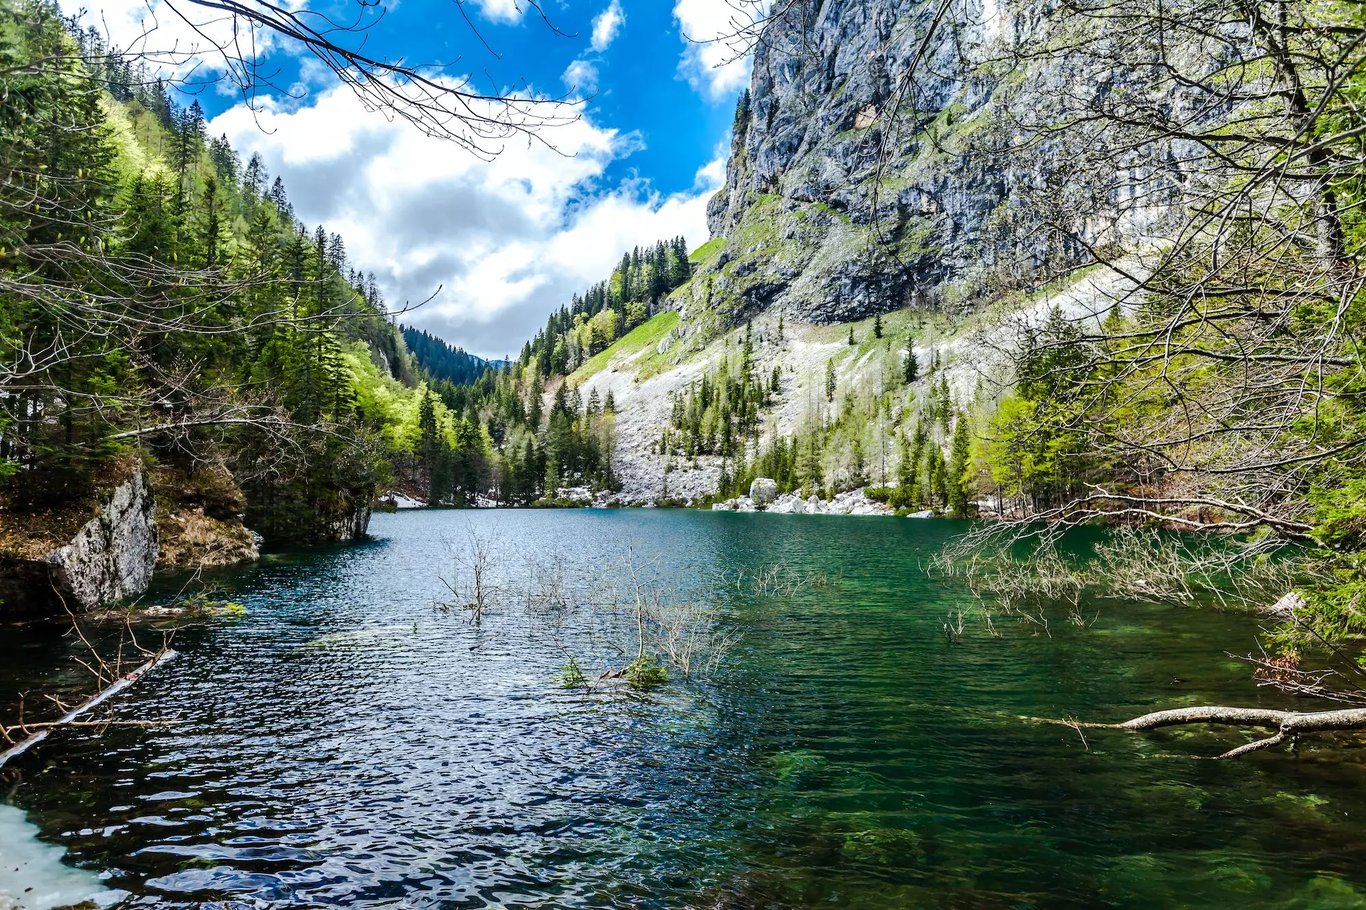 Hiking through the Seven Lakes Valley - Slovenia 